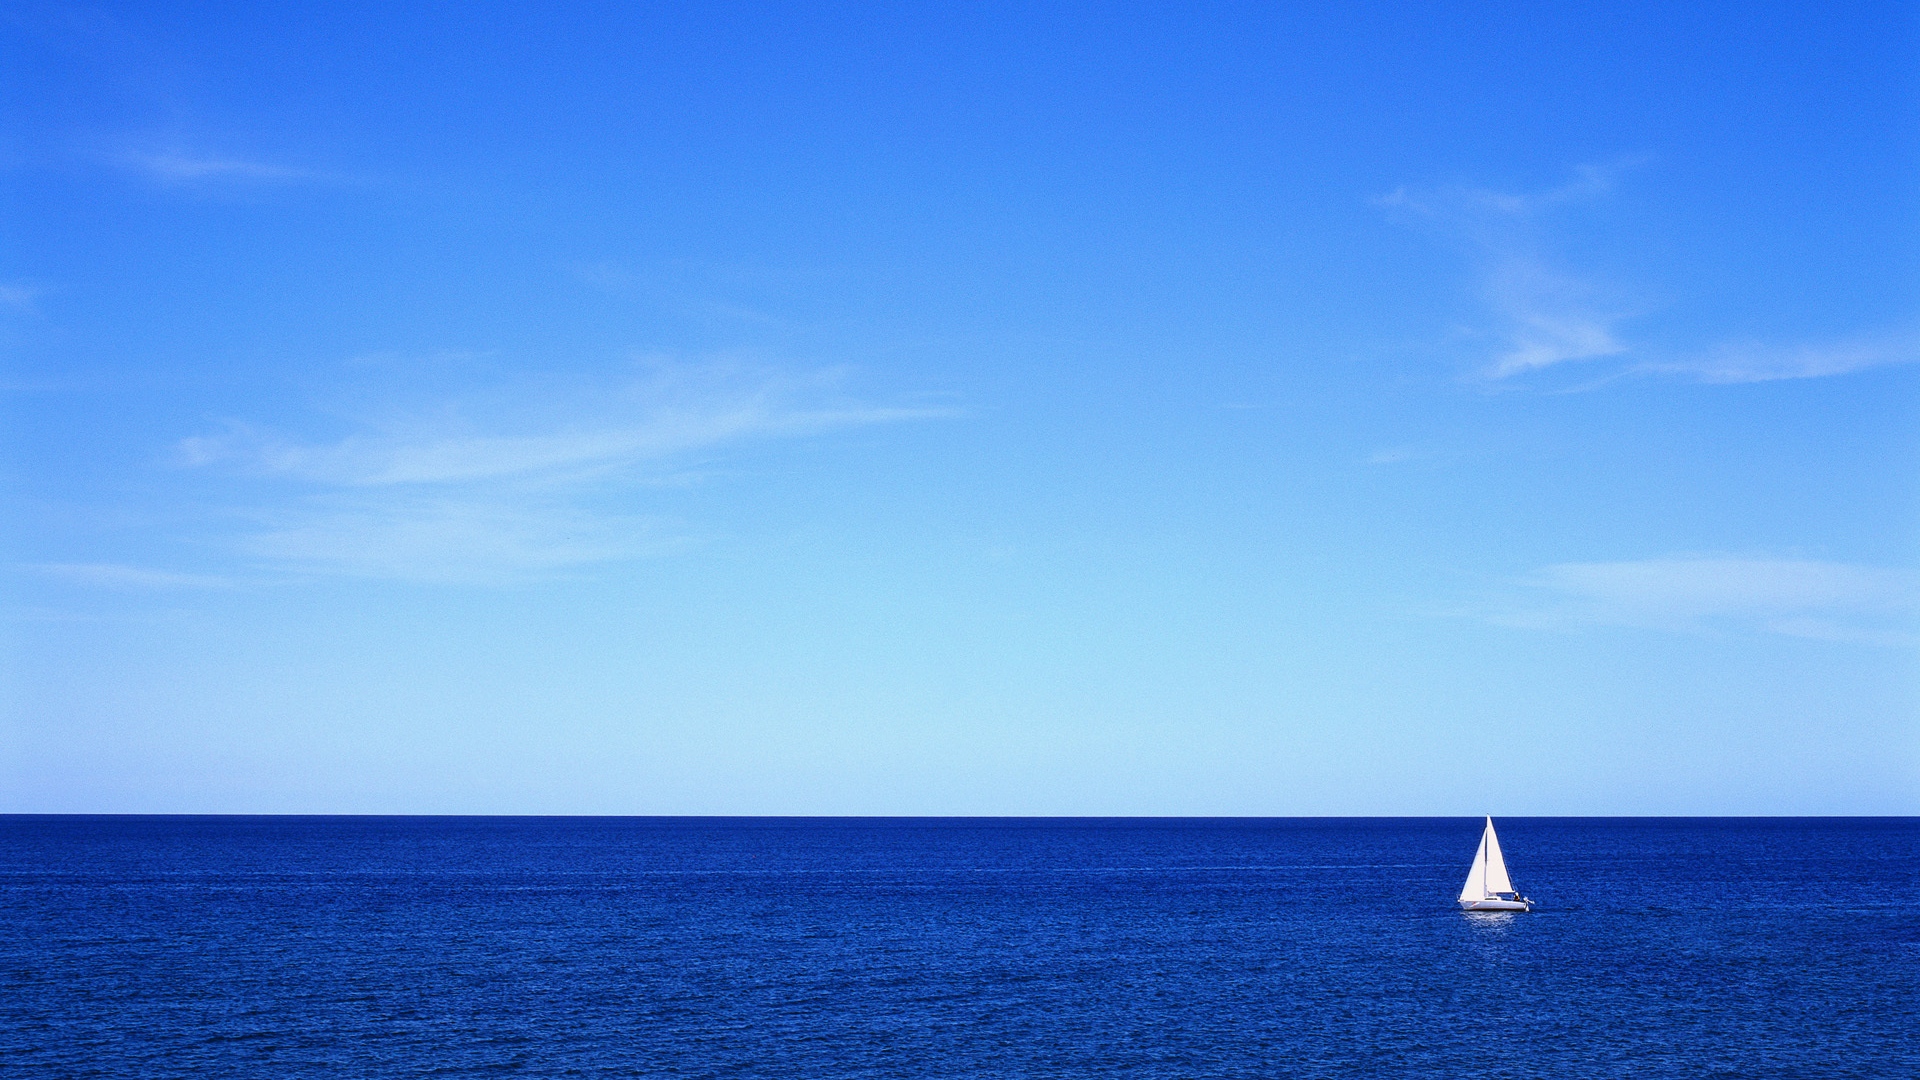 sea_sky_yacht_sail_silence_serenity_48366_1920x1080.jpg